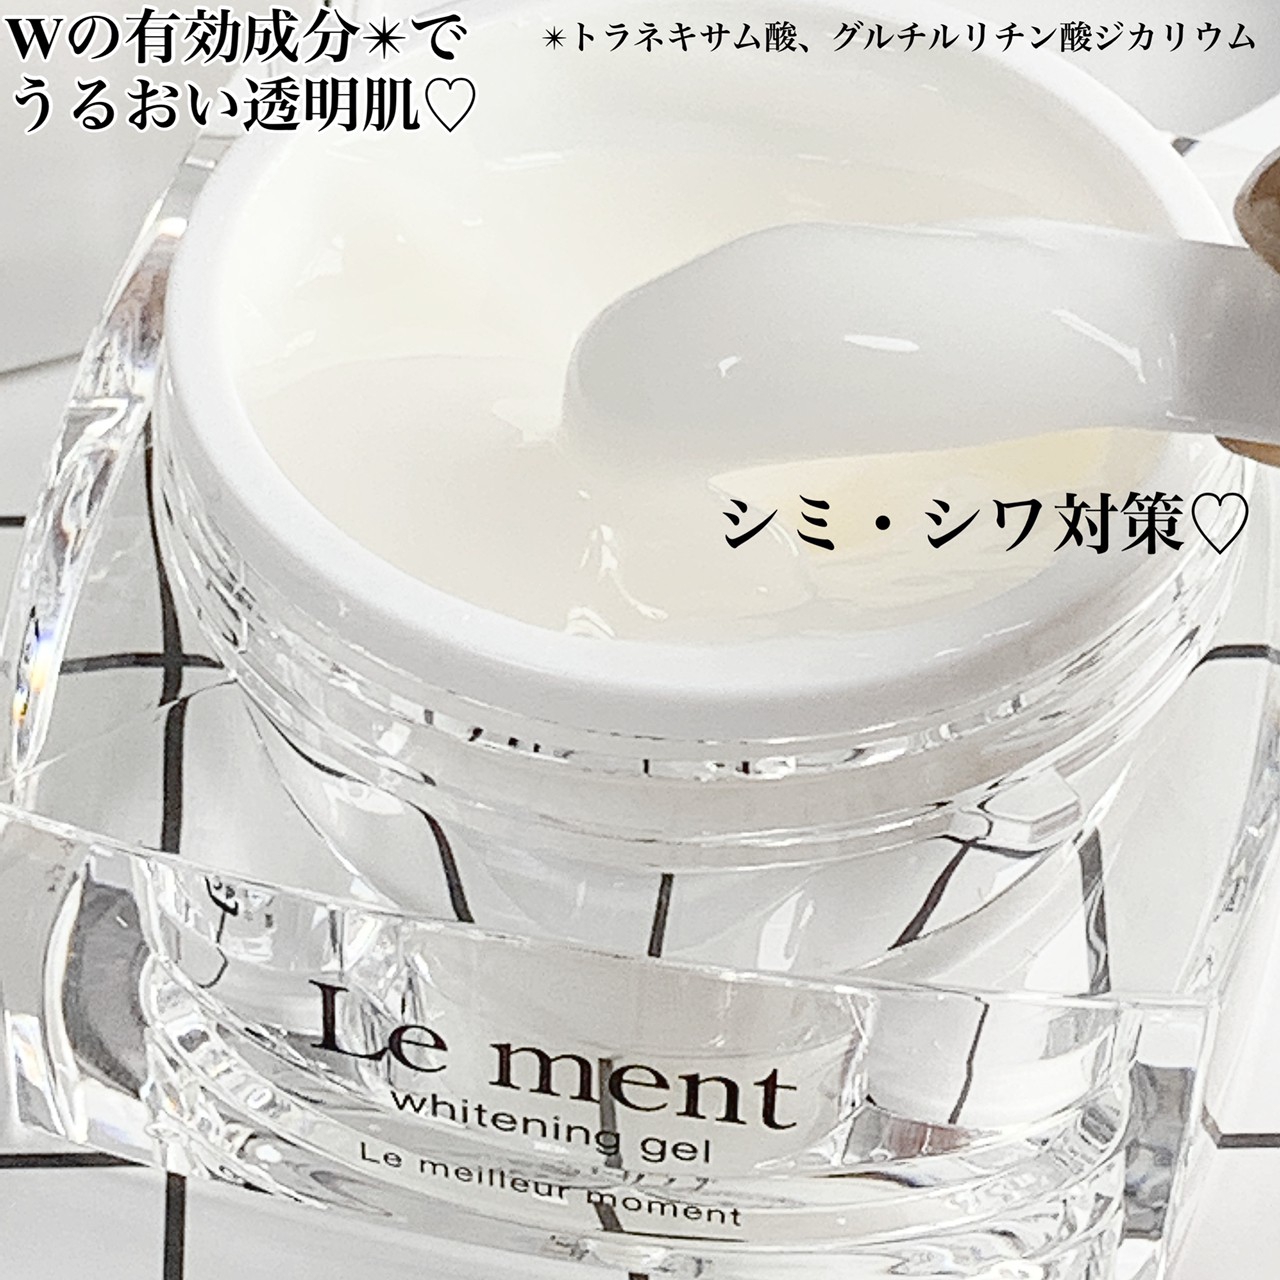 Le ment(ルメント) ホワイトニングジェルを使ったkana_cafe_timeさんのクチコミ画像3